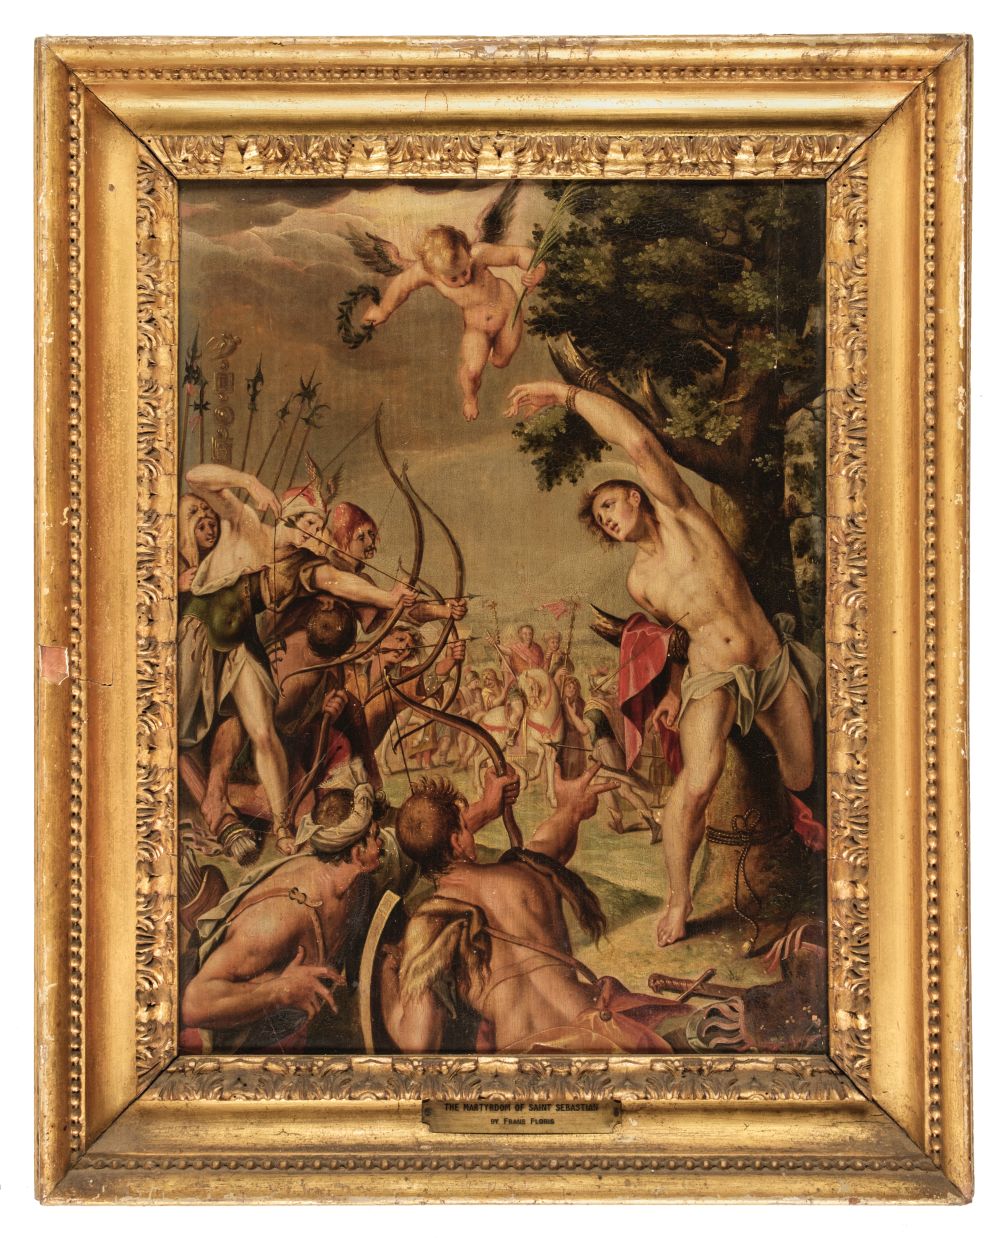 Studio of Hans van Aachen, The Martyrdom of Saint Sebastian, c. 1554, oil on panel